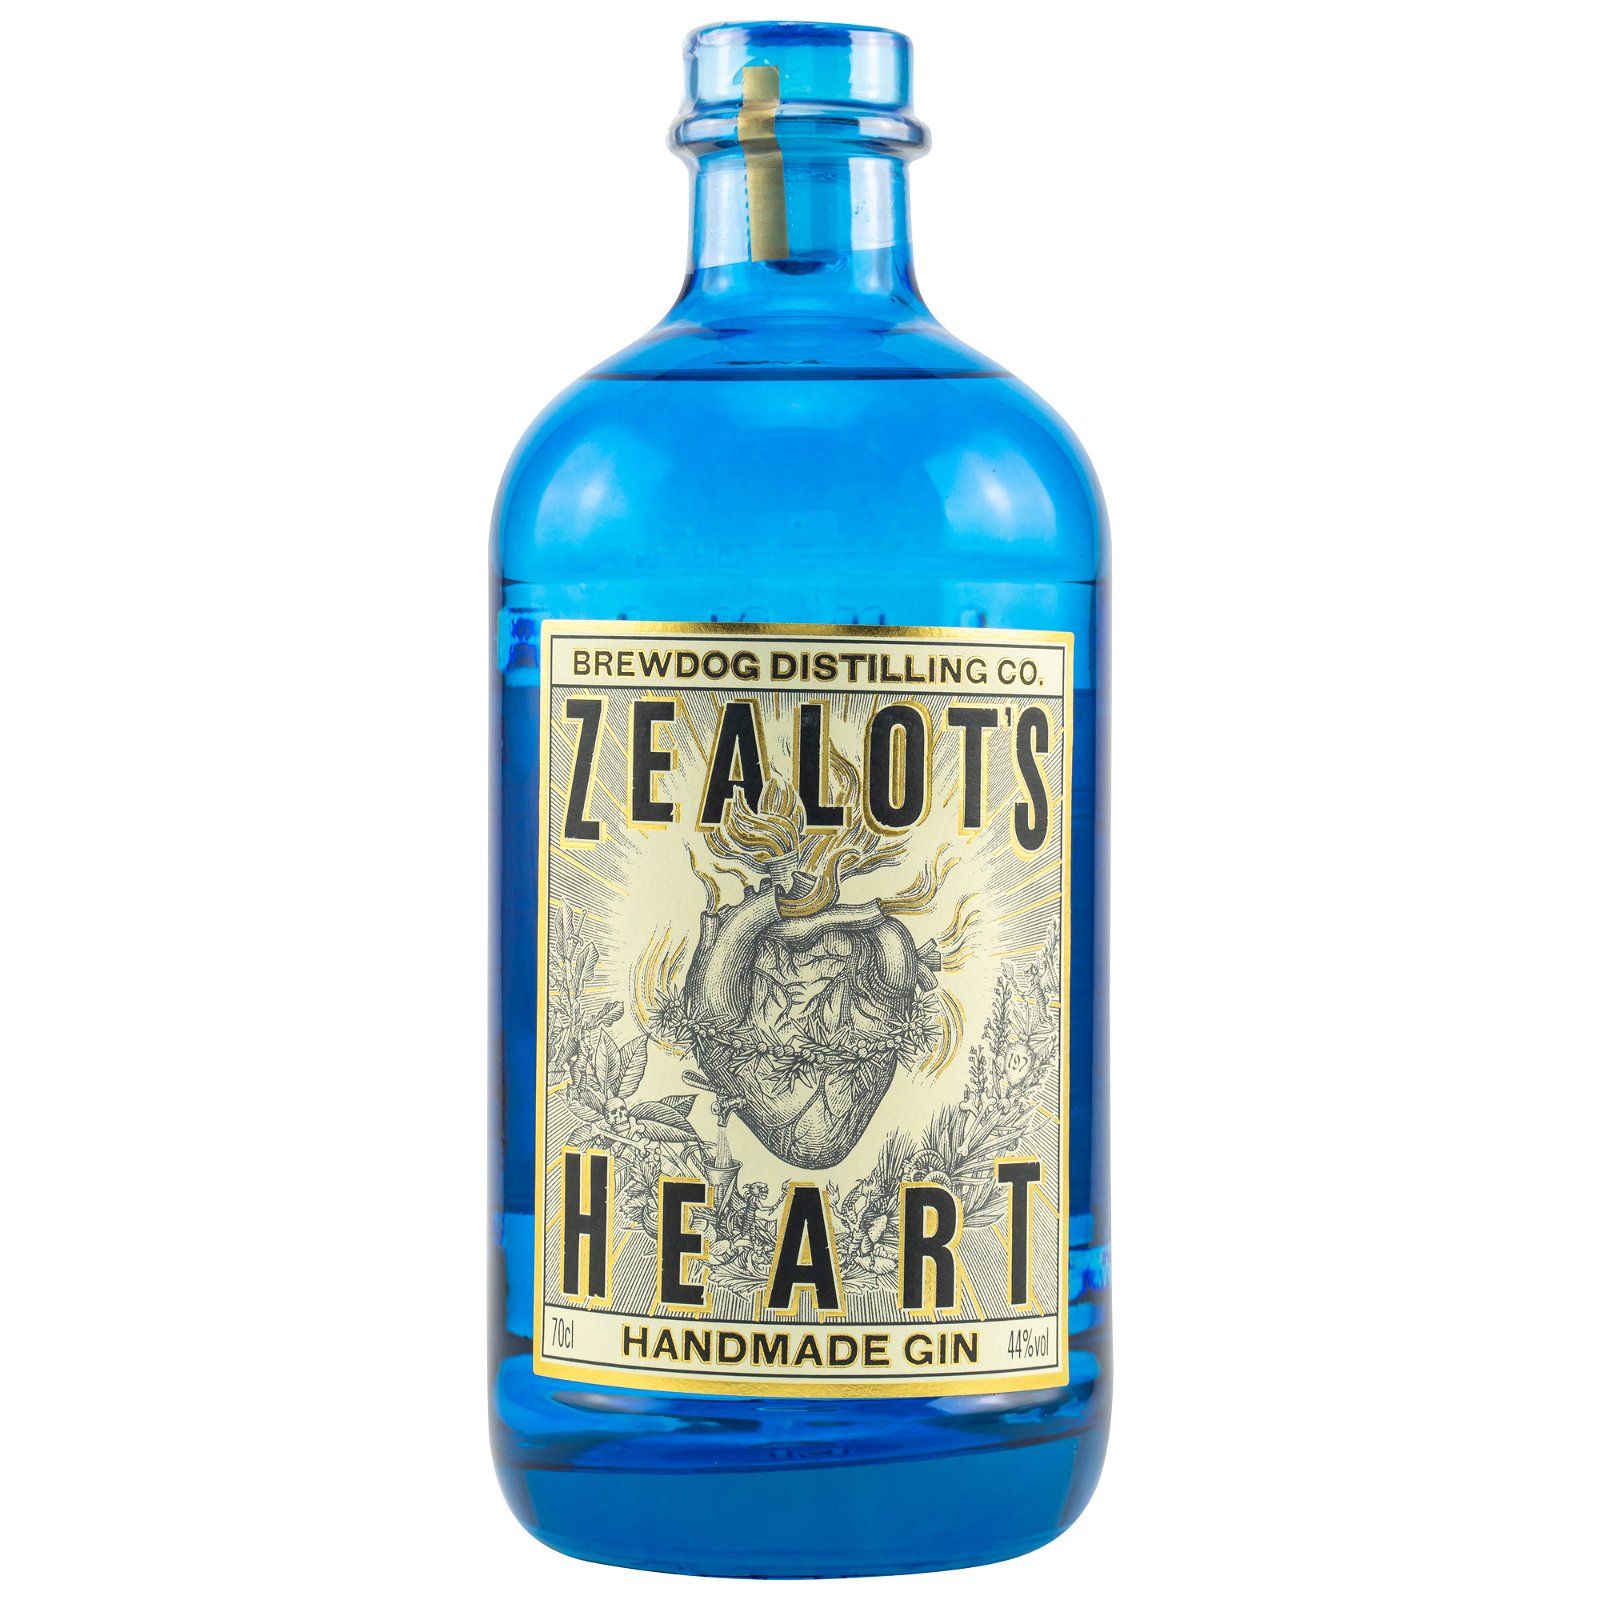 BrewDog Distilling Co. Zealots Heart Handmade Gin